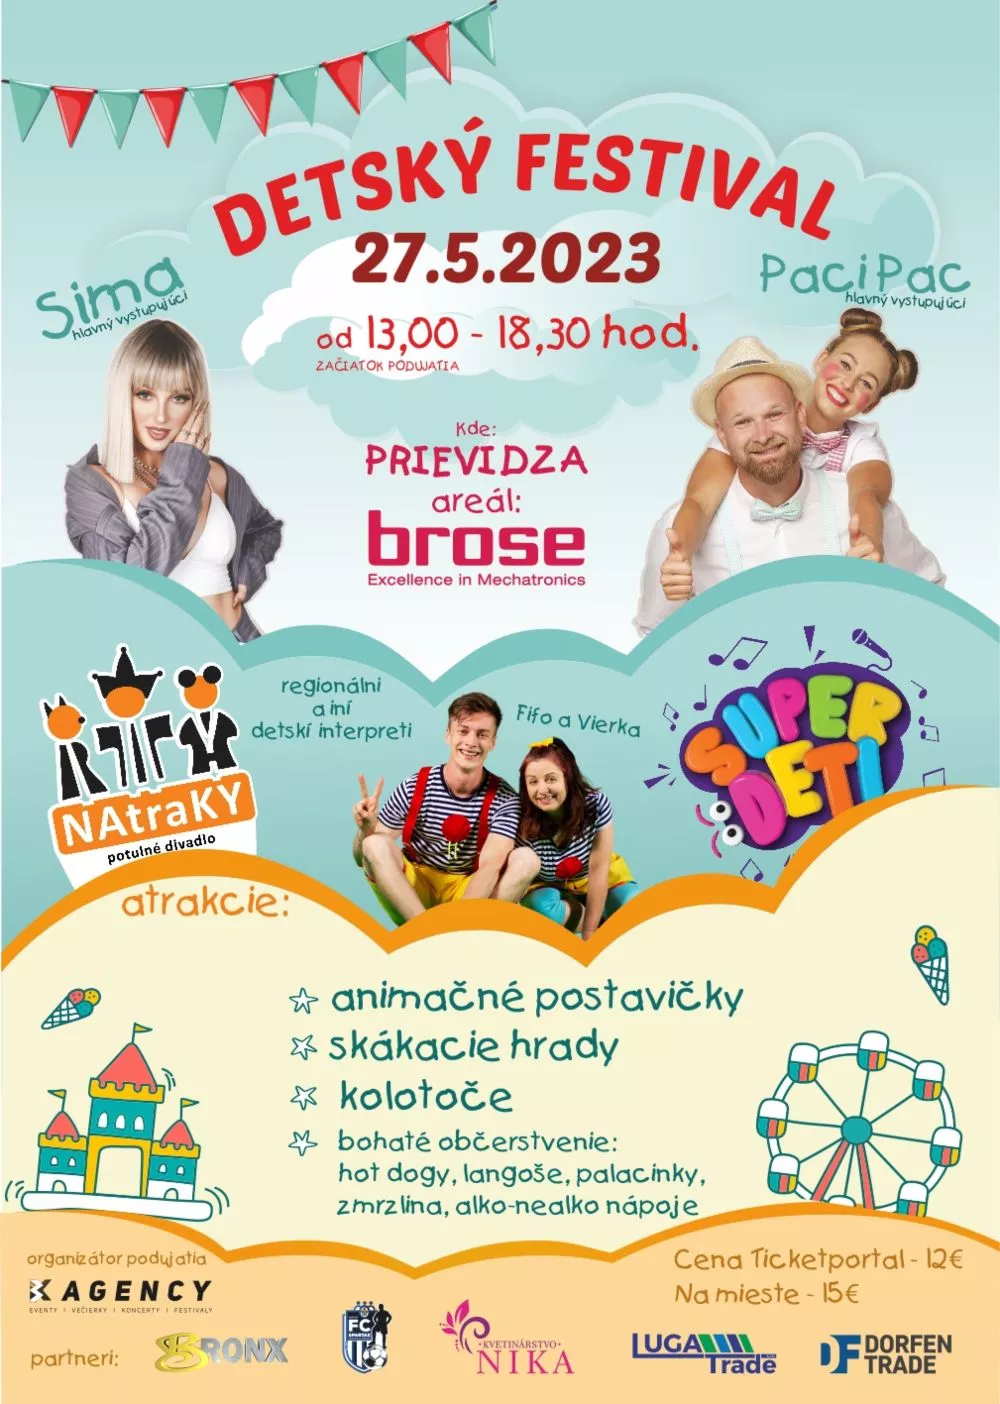 Detský festival Prievidza 2023